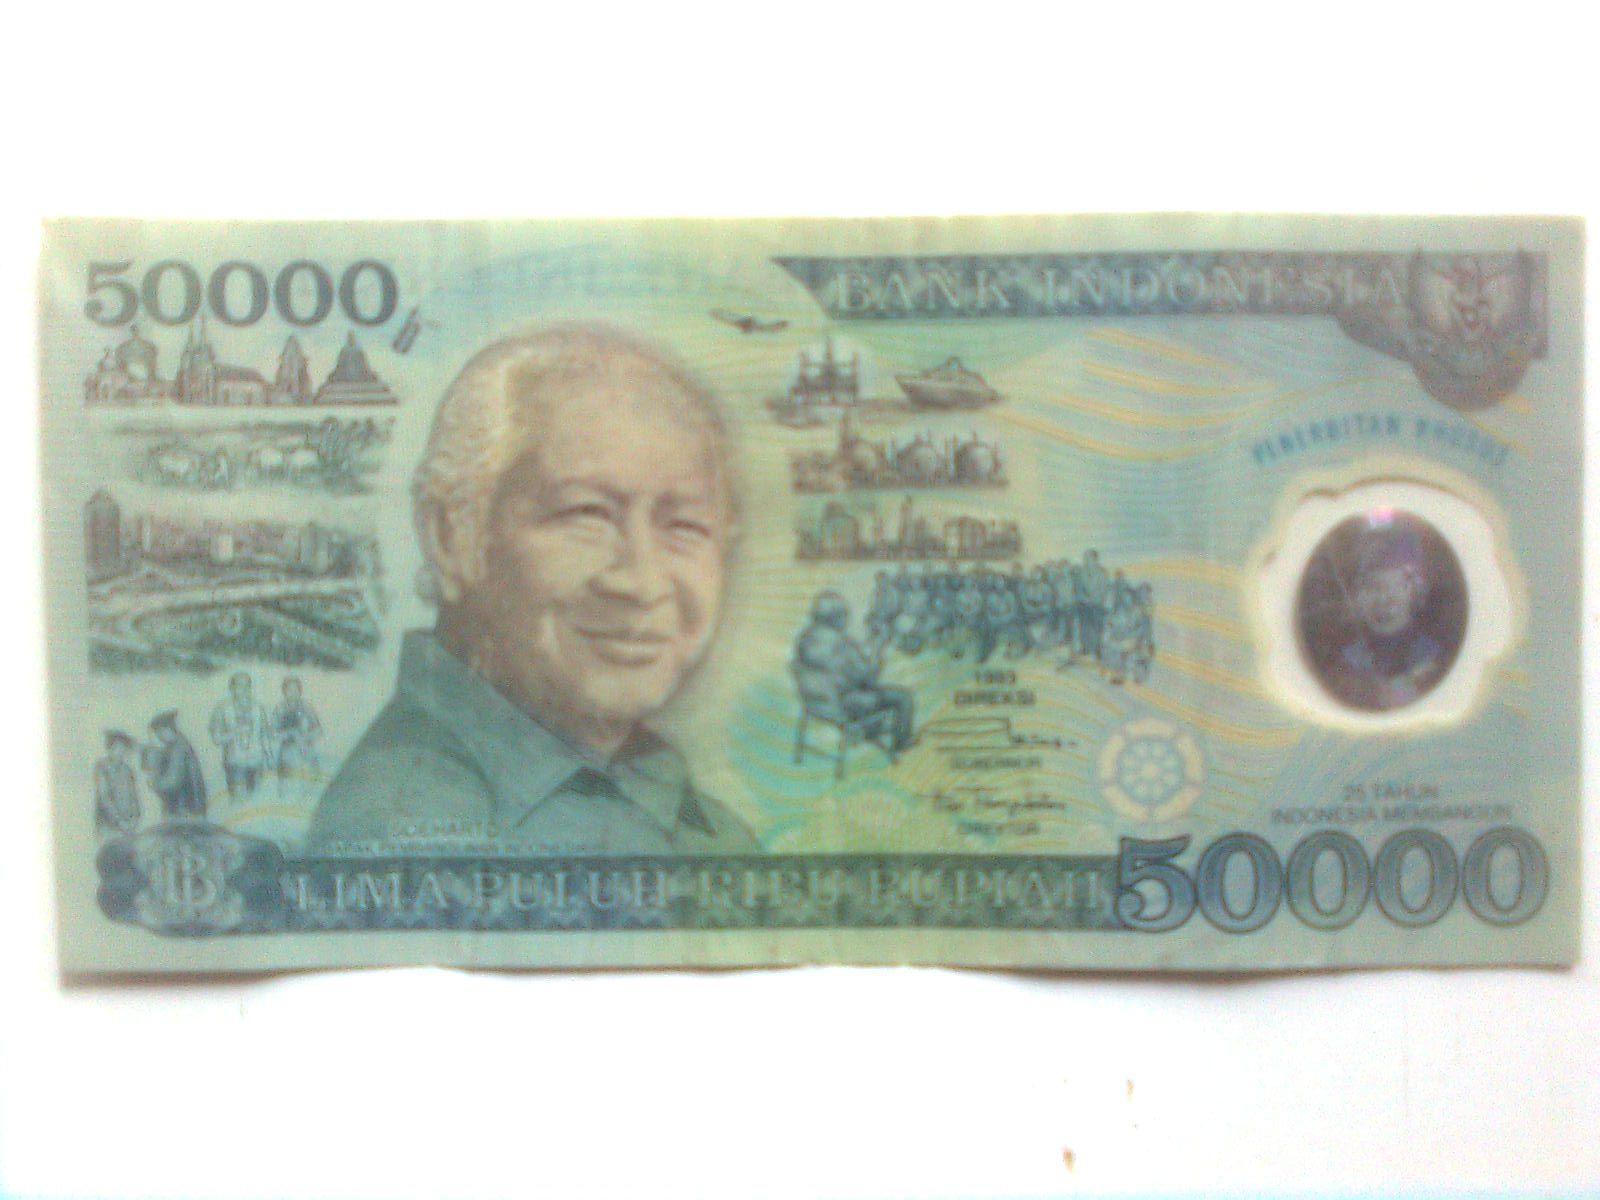 Uang Kuno Rp 50.000  Uang Kuno Indonesia